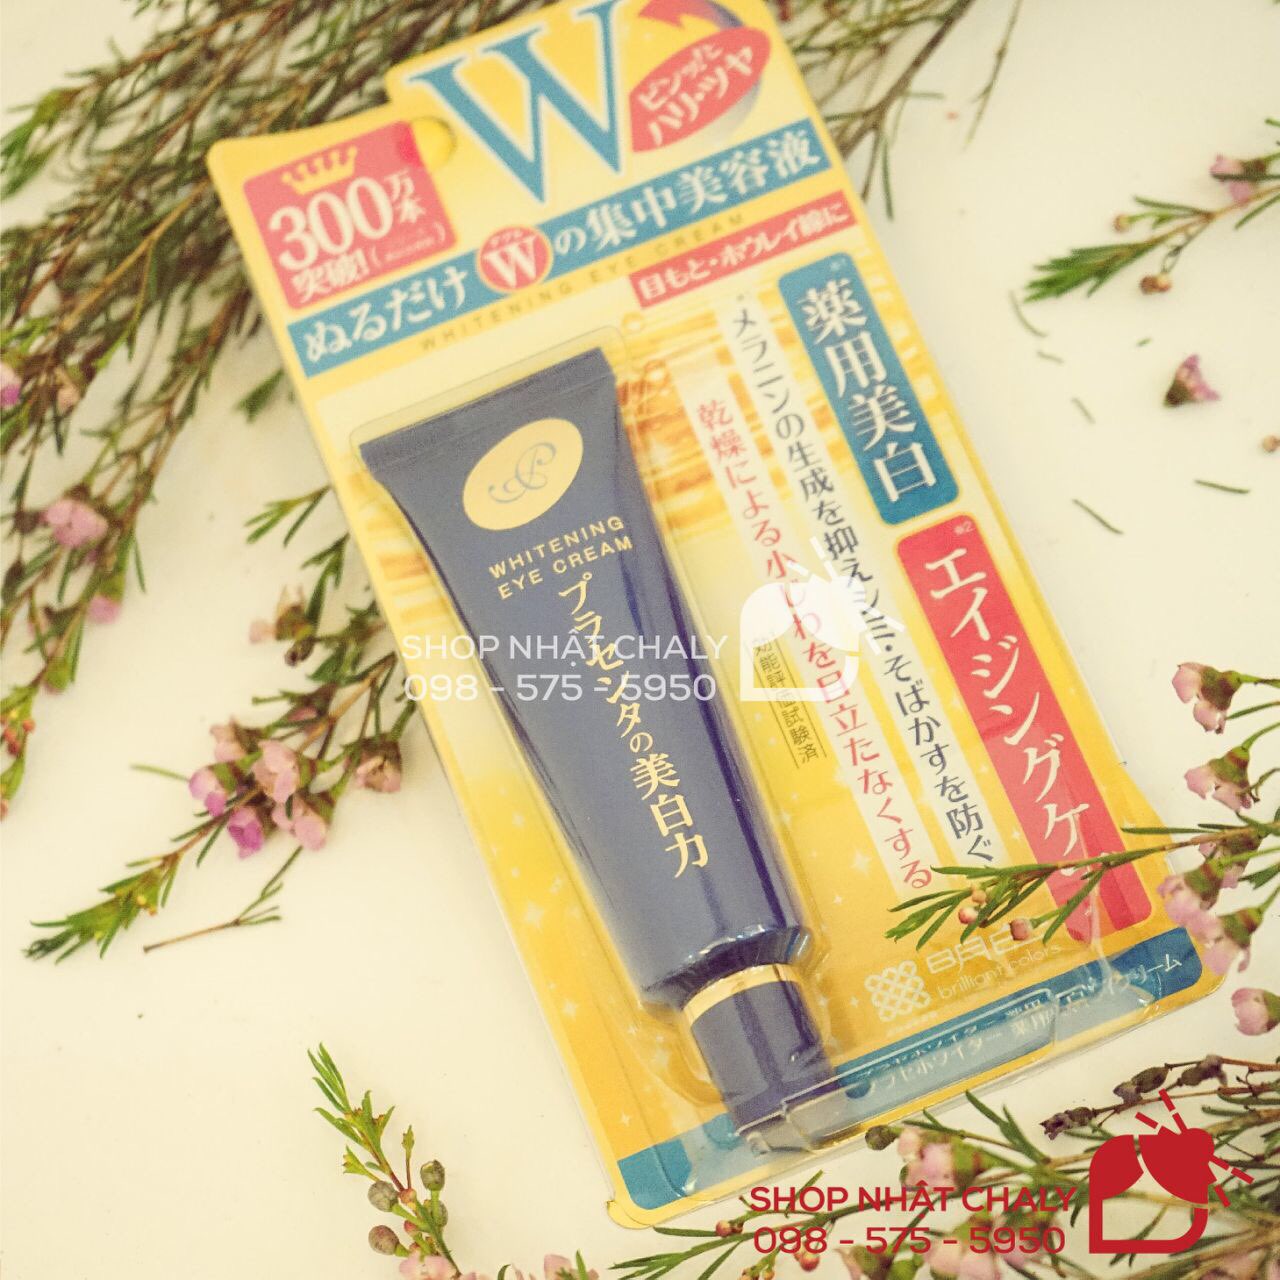 Kem trị thâm mắt meishoku whitening eye cream review cực cao trên Cosme Ranking, liên tục lọt top kem mắt đa năng tốt nhất tại Nhật Bản